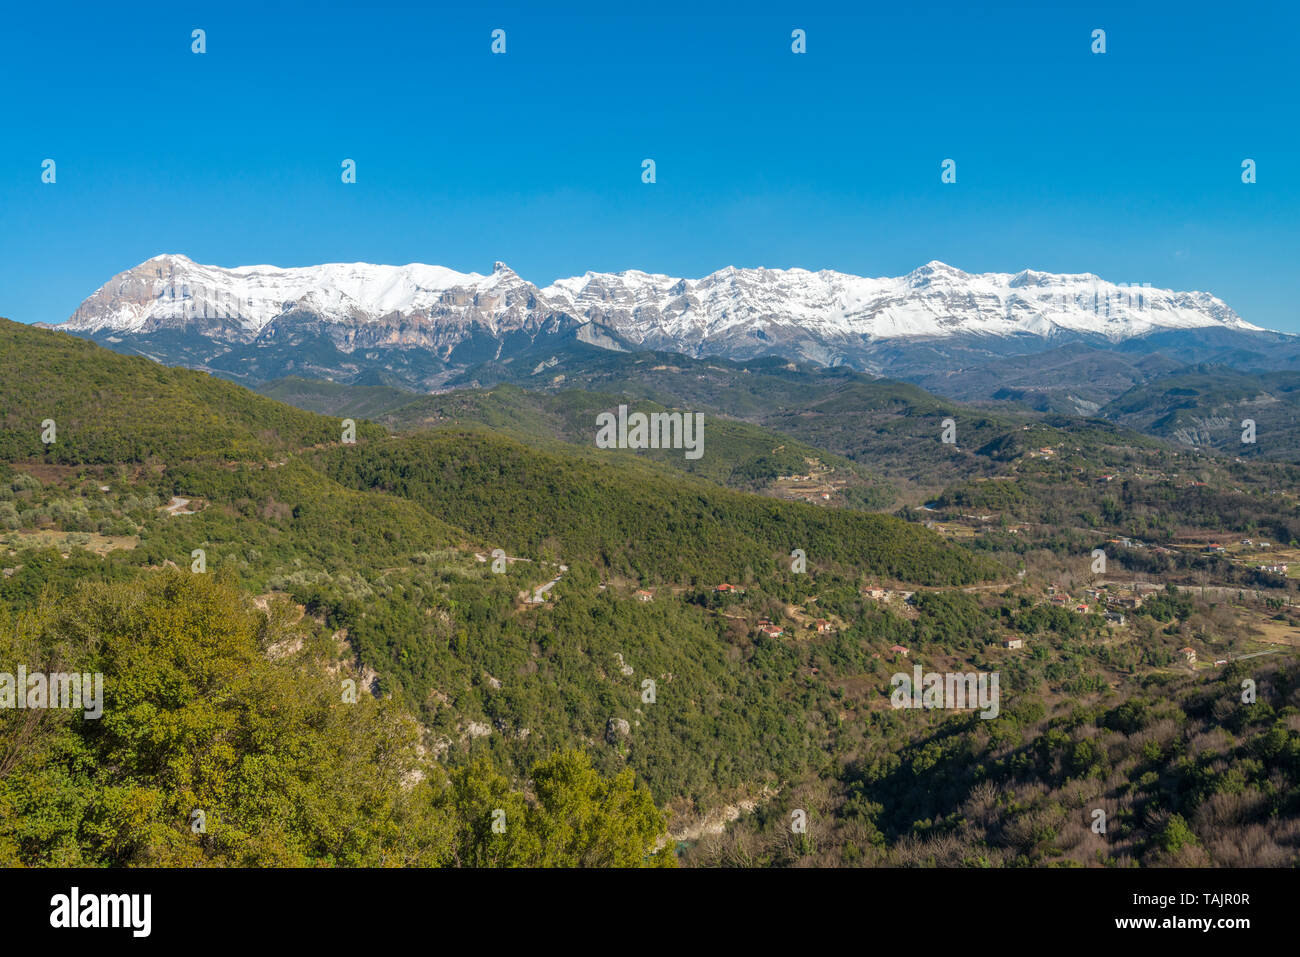 Point de vue panoramique surplombant la parfaite Alpes Grec, snowcapped mountain range qui domine la vallée, dans l'arrière-pays de la Grèce. Banque D'Images